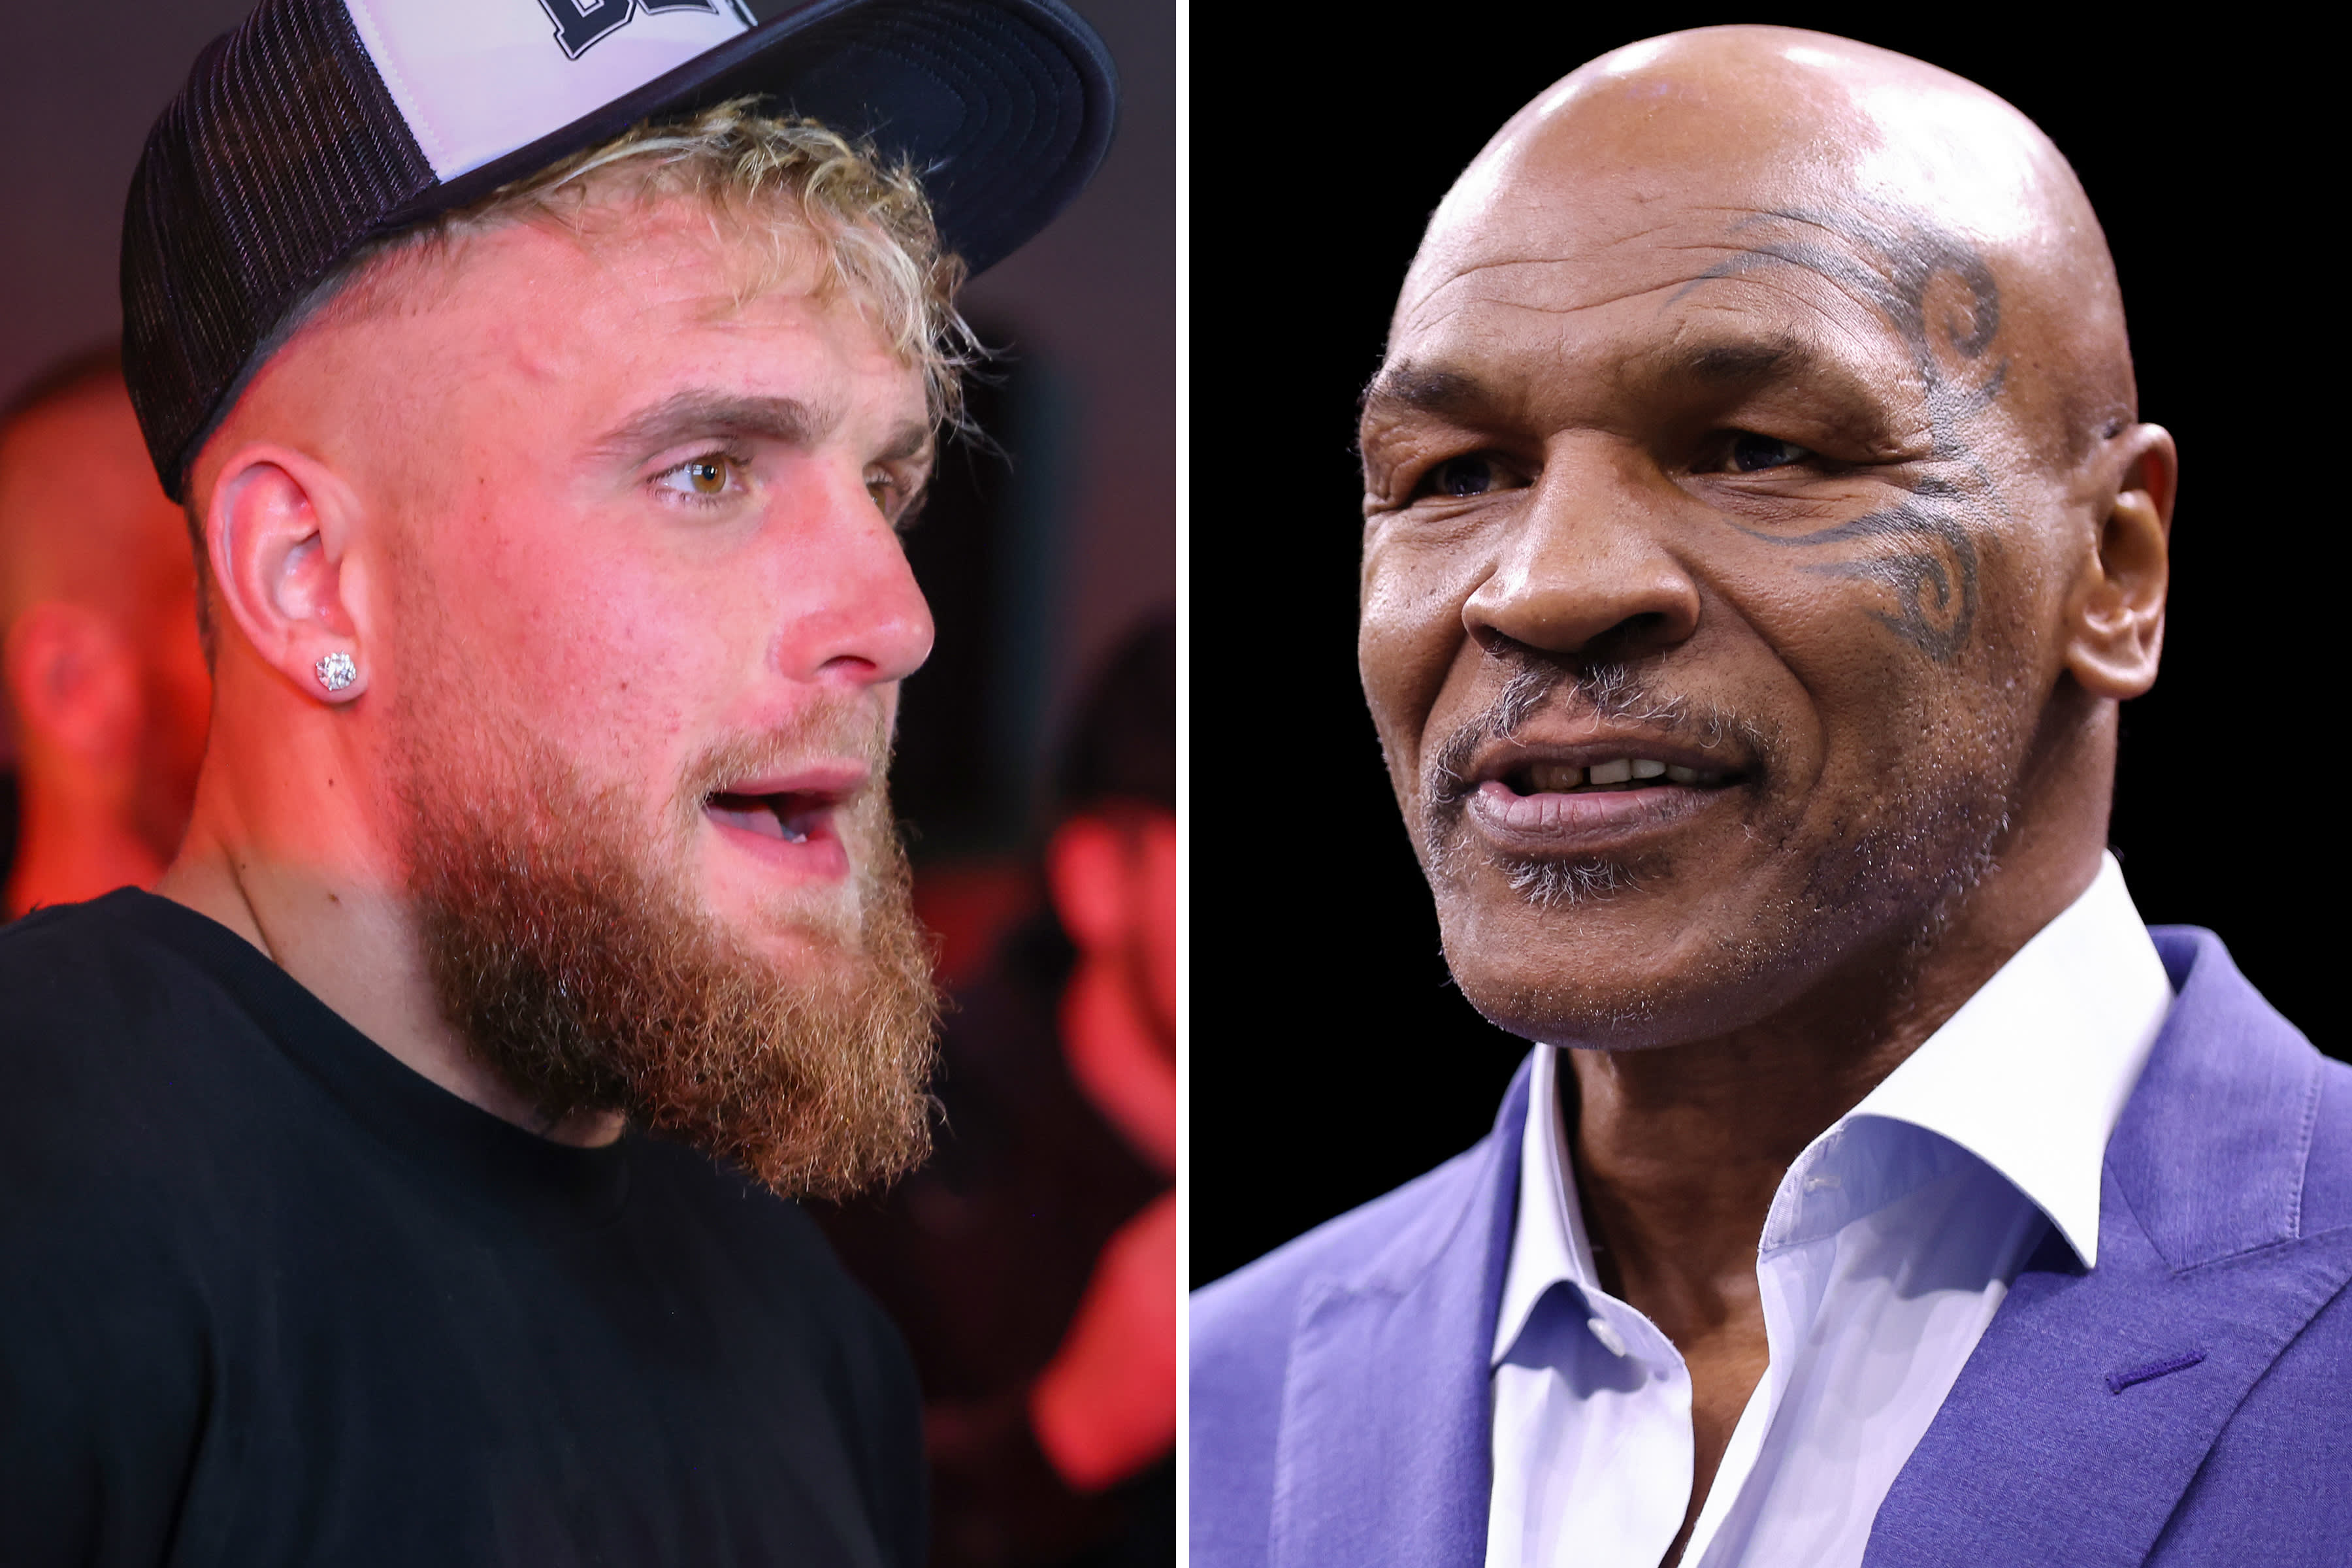 Van het gevecht tussen Tyson en Paul tot de NFL: de belangstelling van Netflix voor livesport groeit